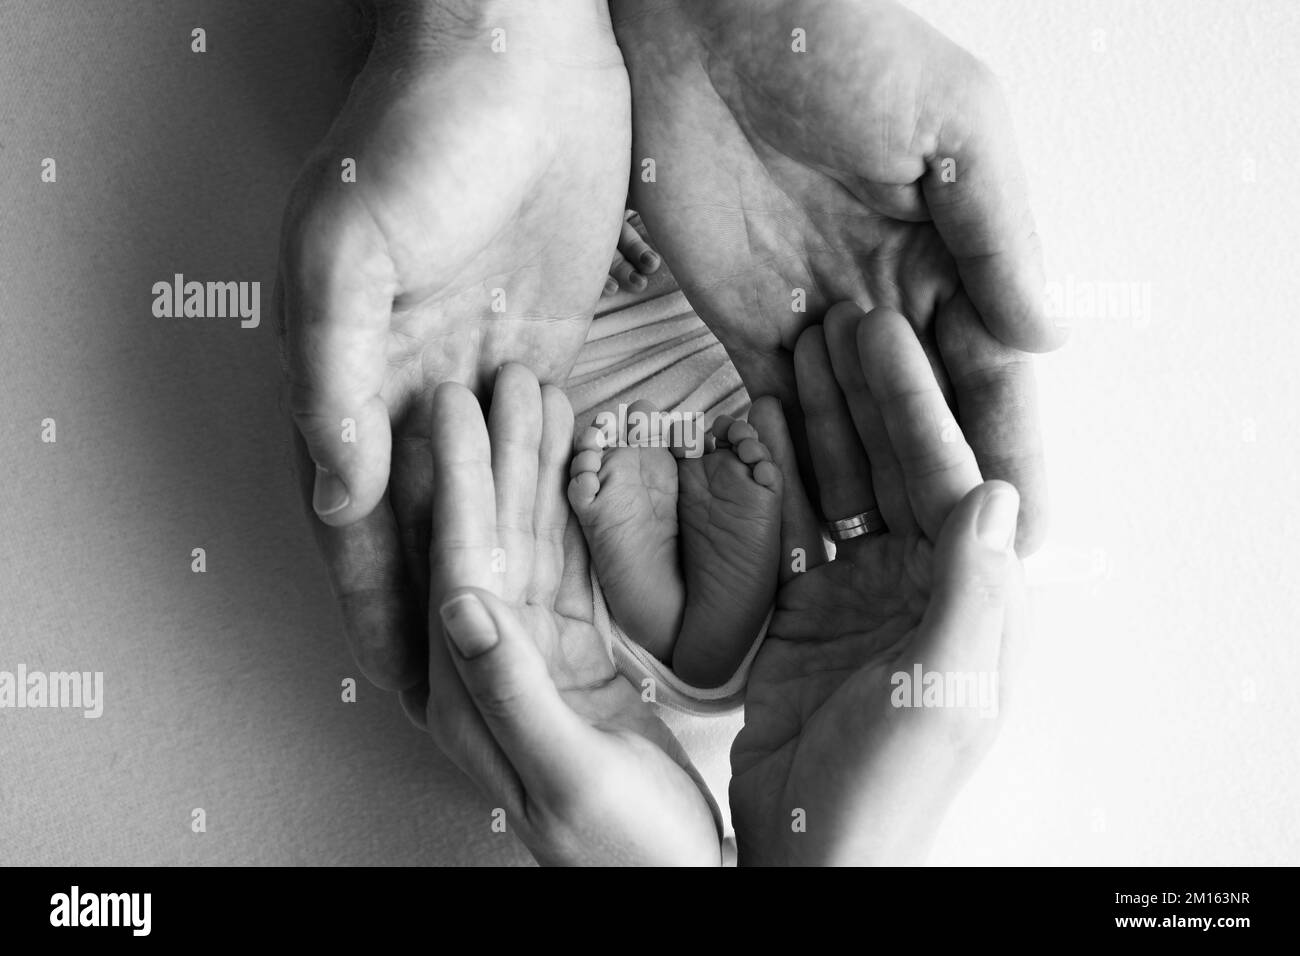 Gambe, dita dei piedi, piedi e talloni di un neonato. Le mani dei genitori tengono le gambe del bambino Foto Stock